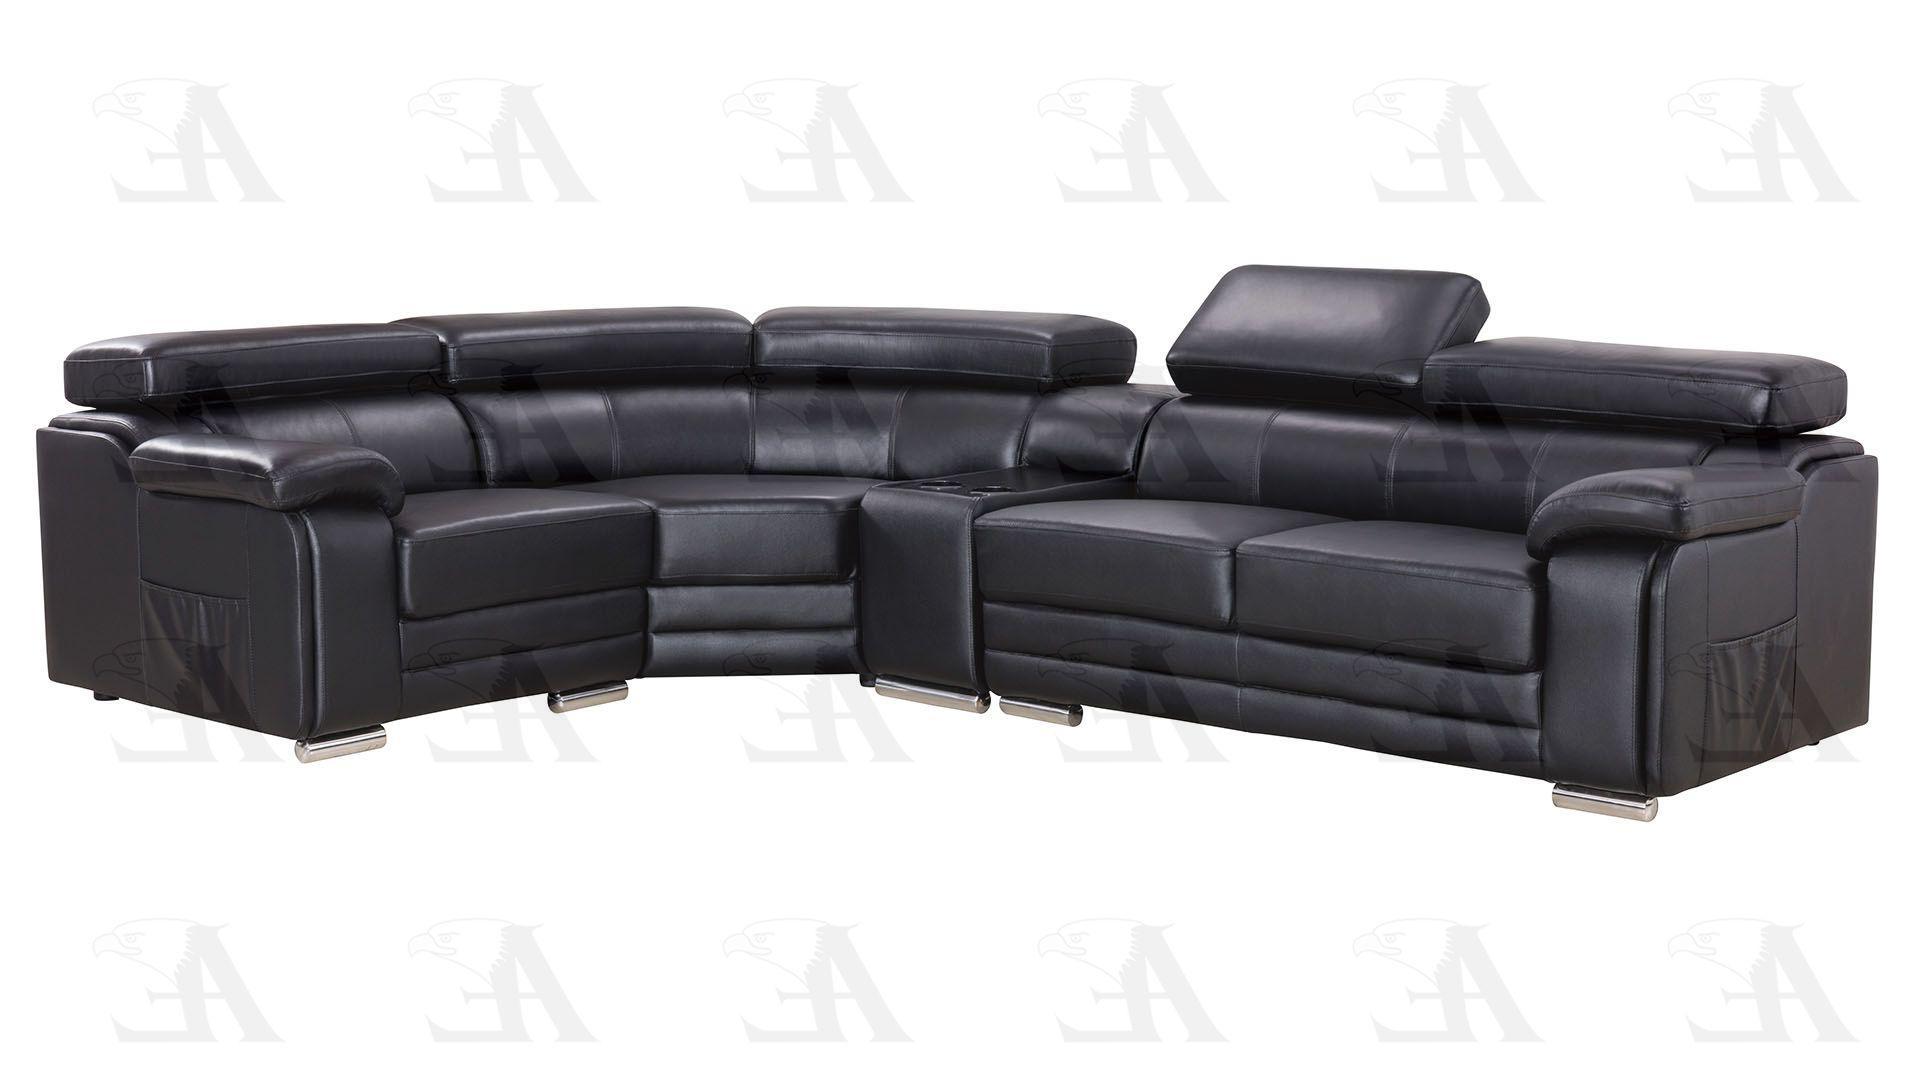 

    
EK-L516R-BK American Eagle Furniture Sectional Sofa
